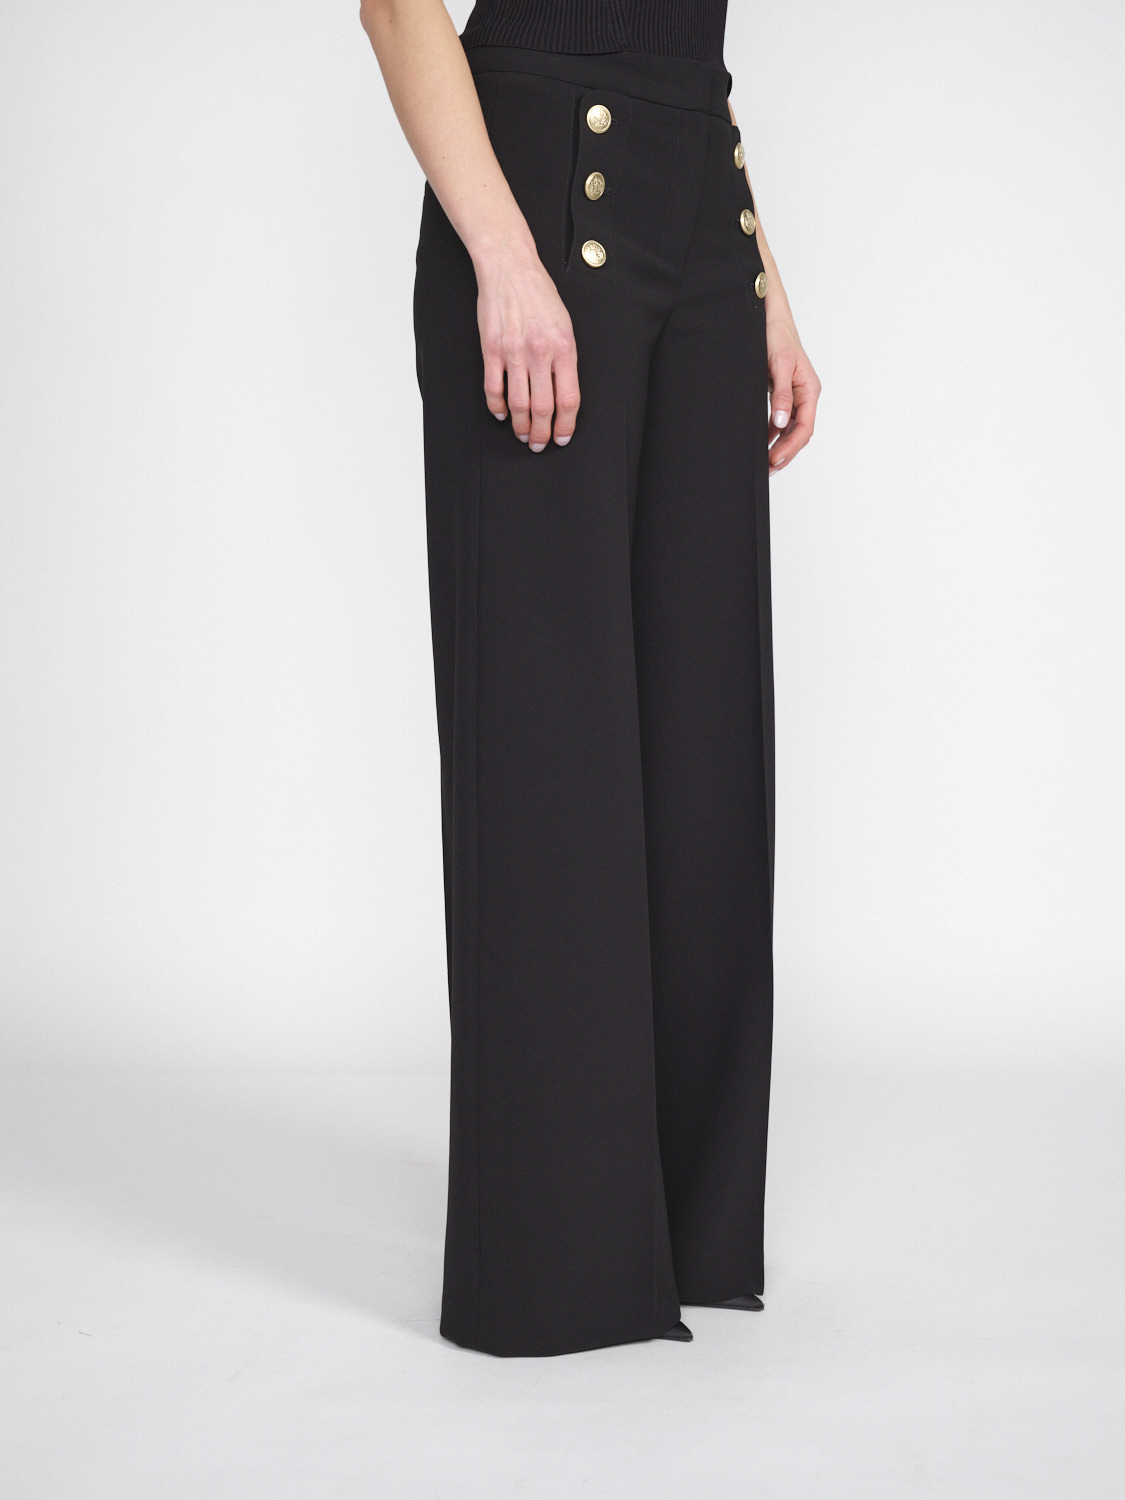 Seductive Bridget – Stretchige Hose mit goldfarbenen Knopfdetails   schwarz 34